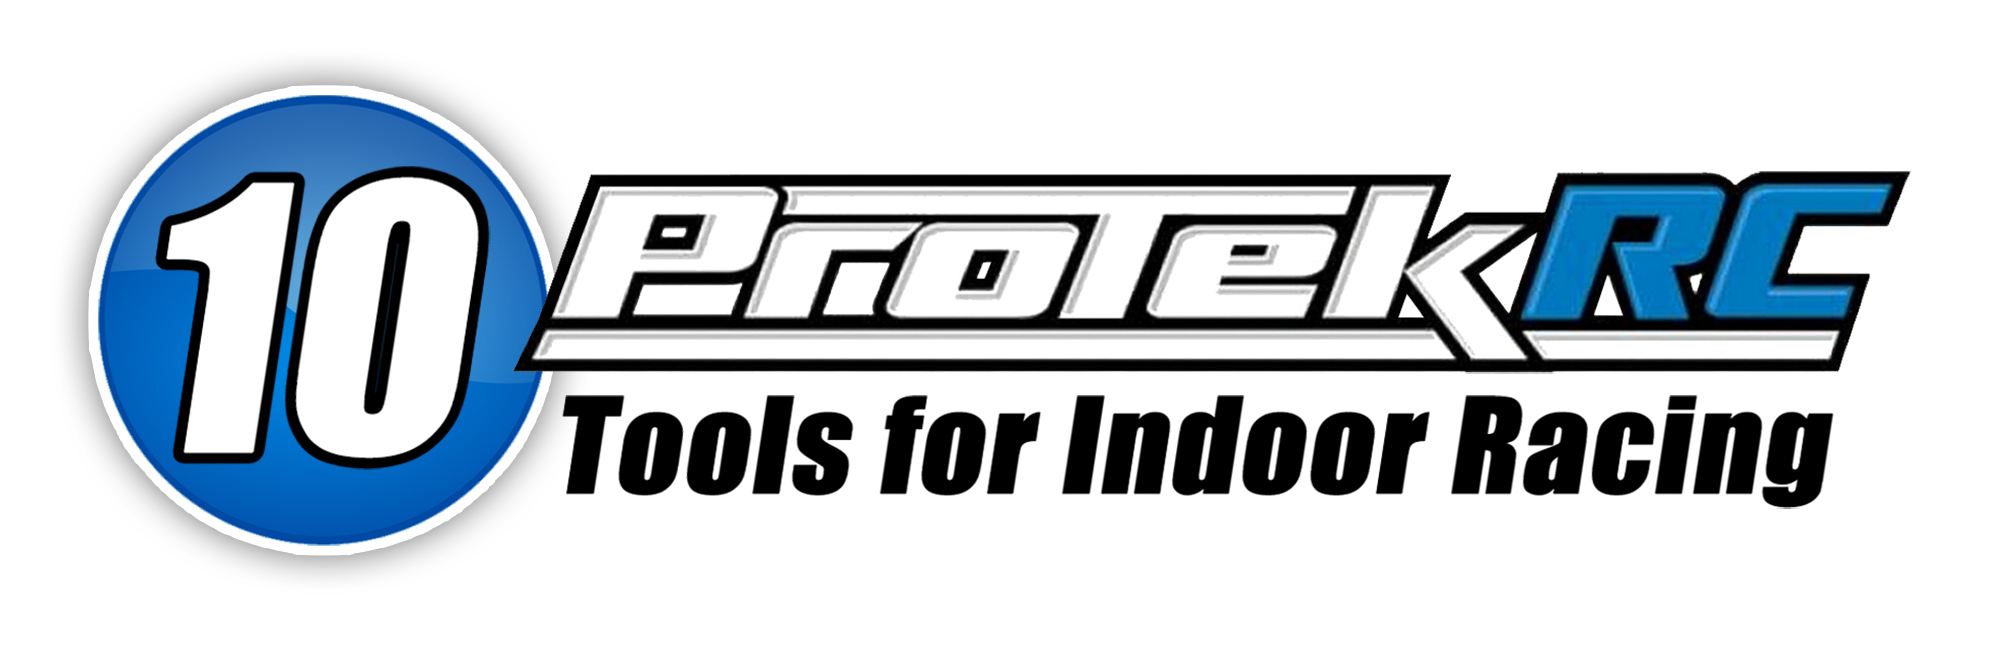 Top Ten Tools For Indoor Racing - ProTek